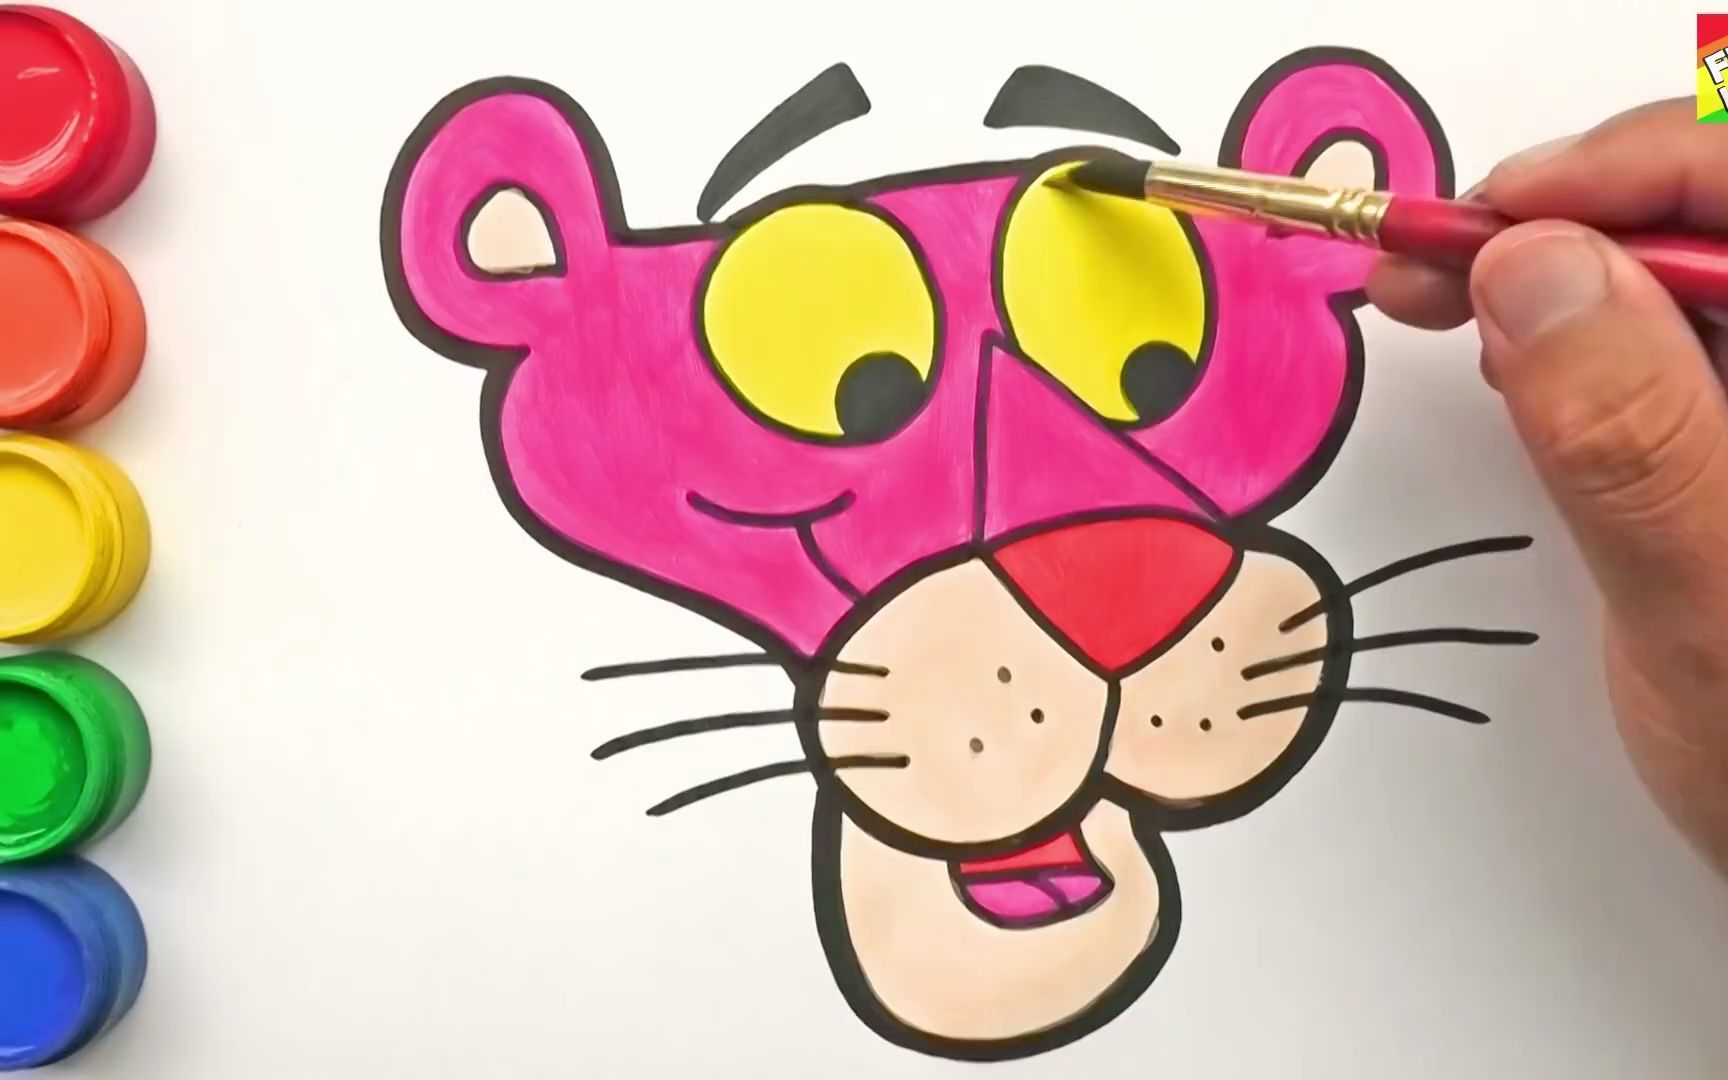 【简笔水彩画】教你画卡通豹子然后上色~超级简单的绘画,一看就会!